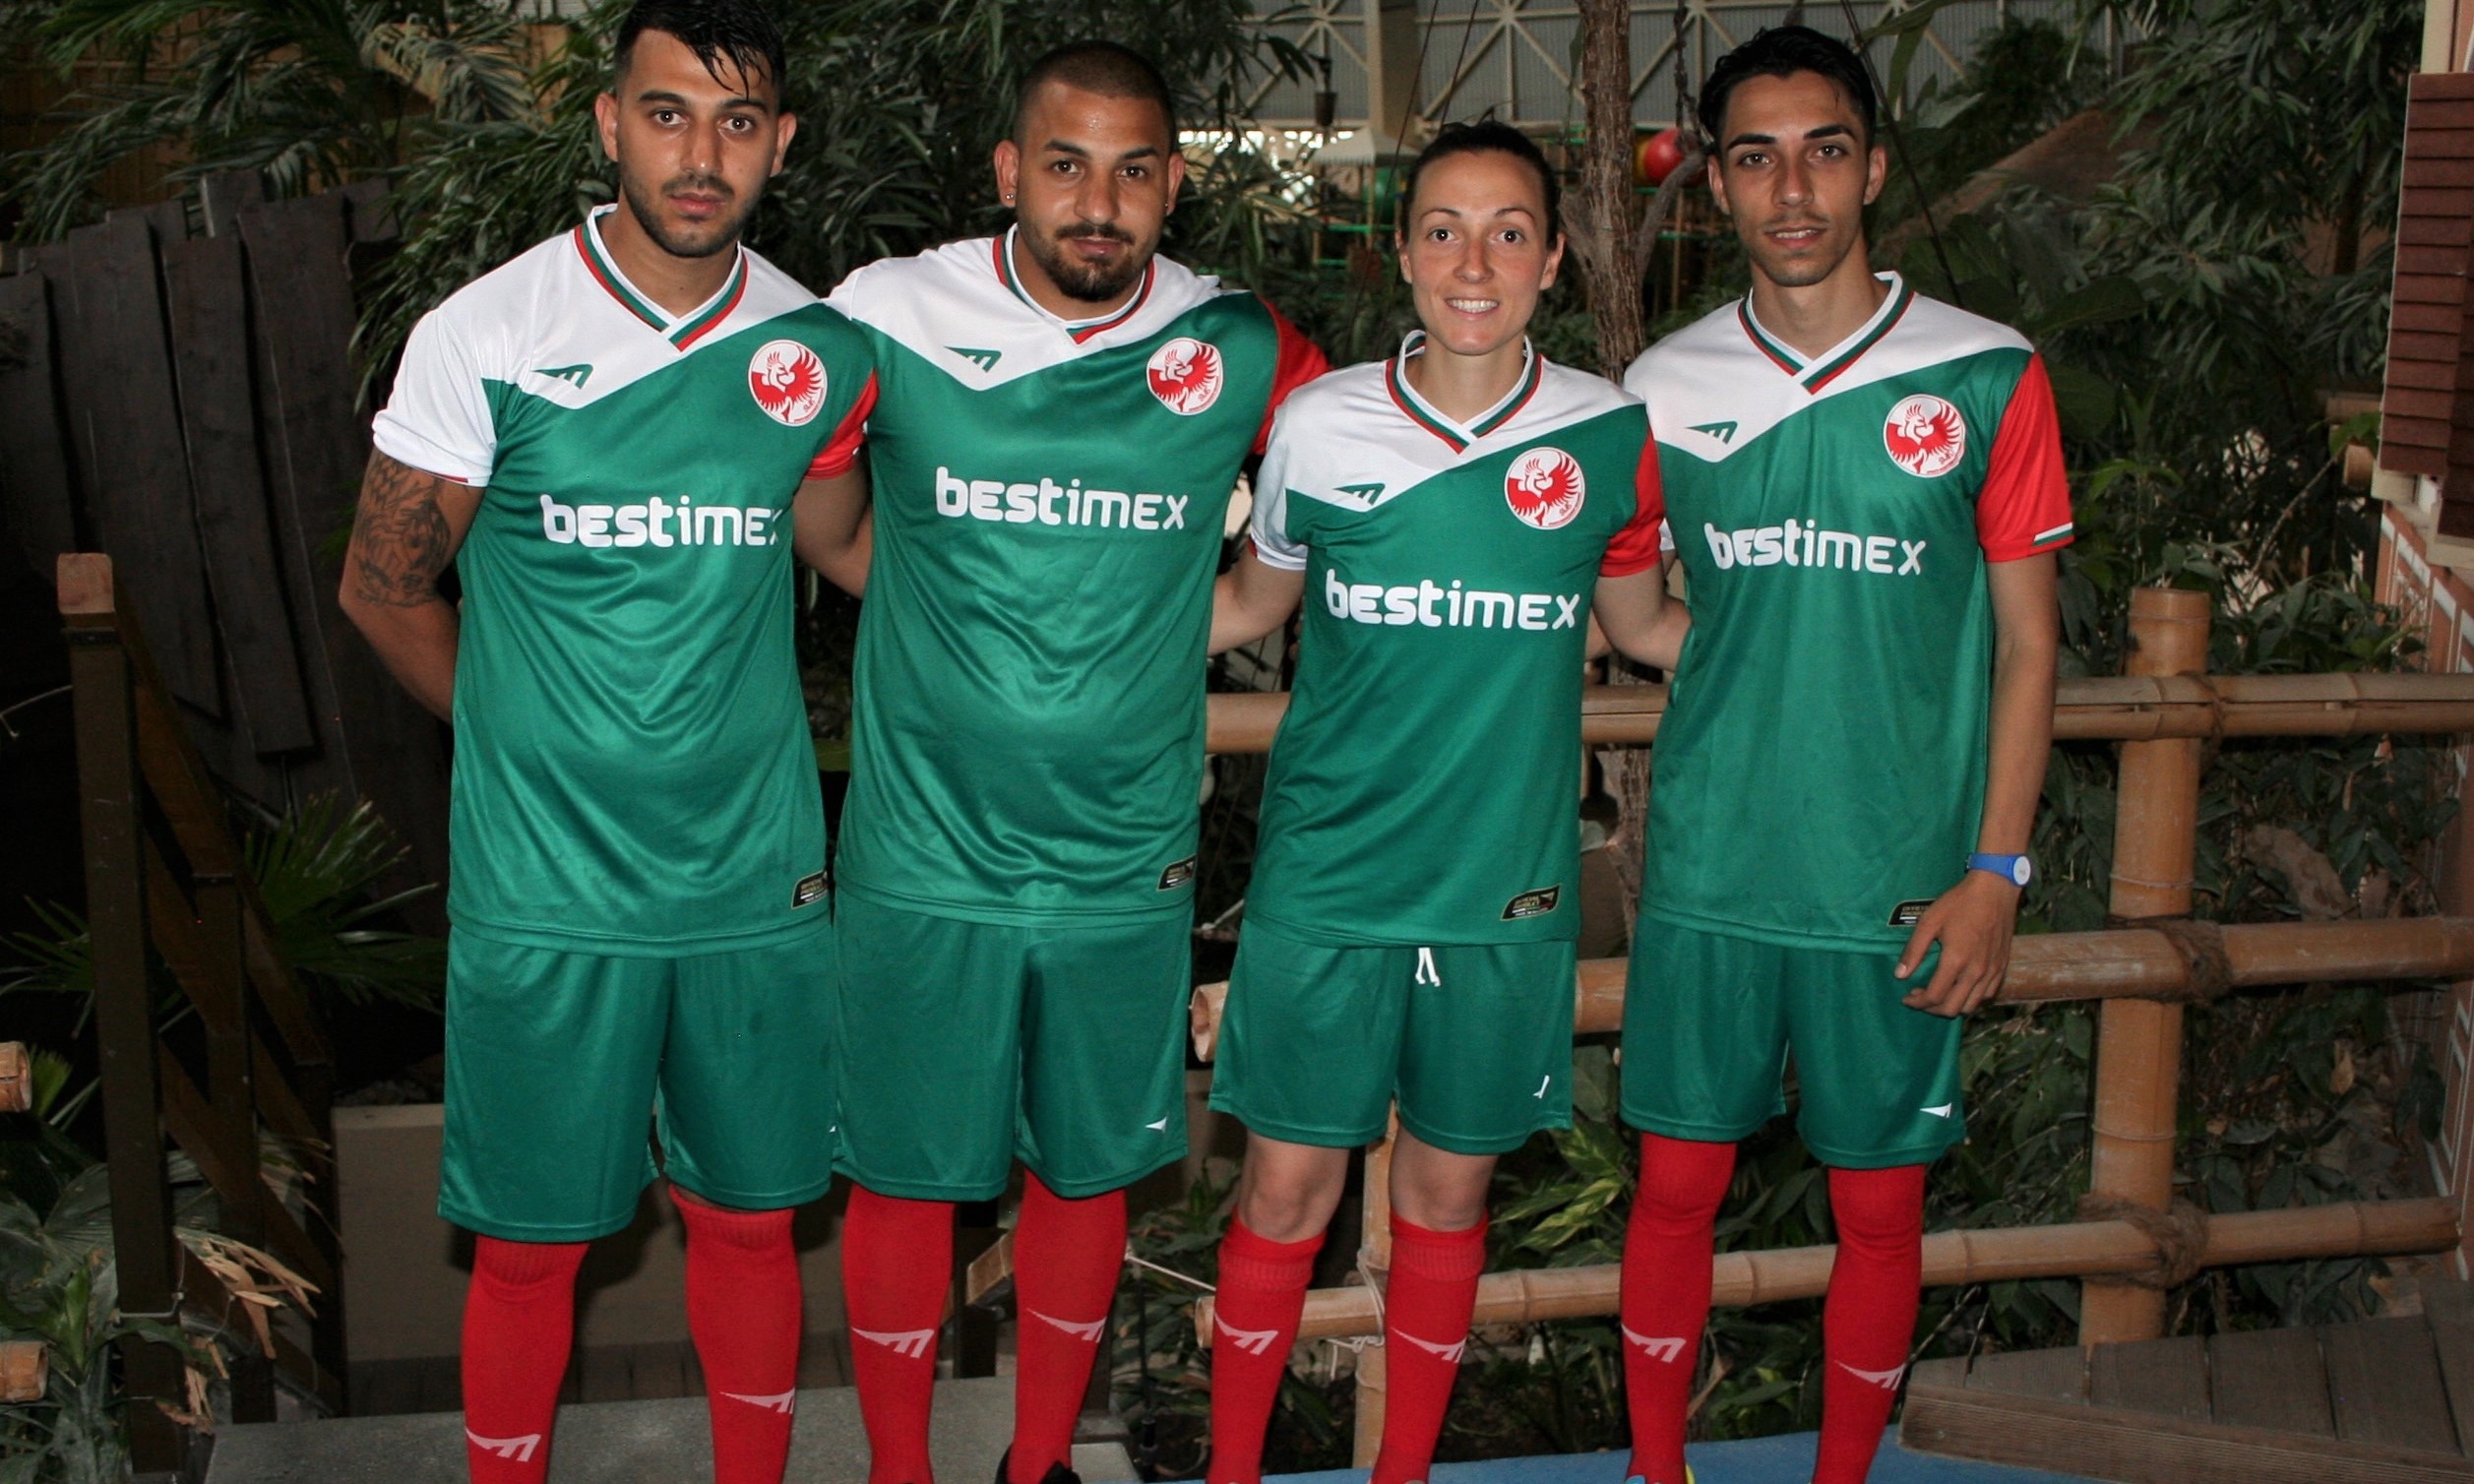 Български национален отбор сформиран от Спортс Мениджмънт България започва днес